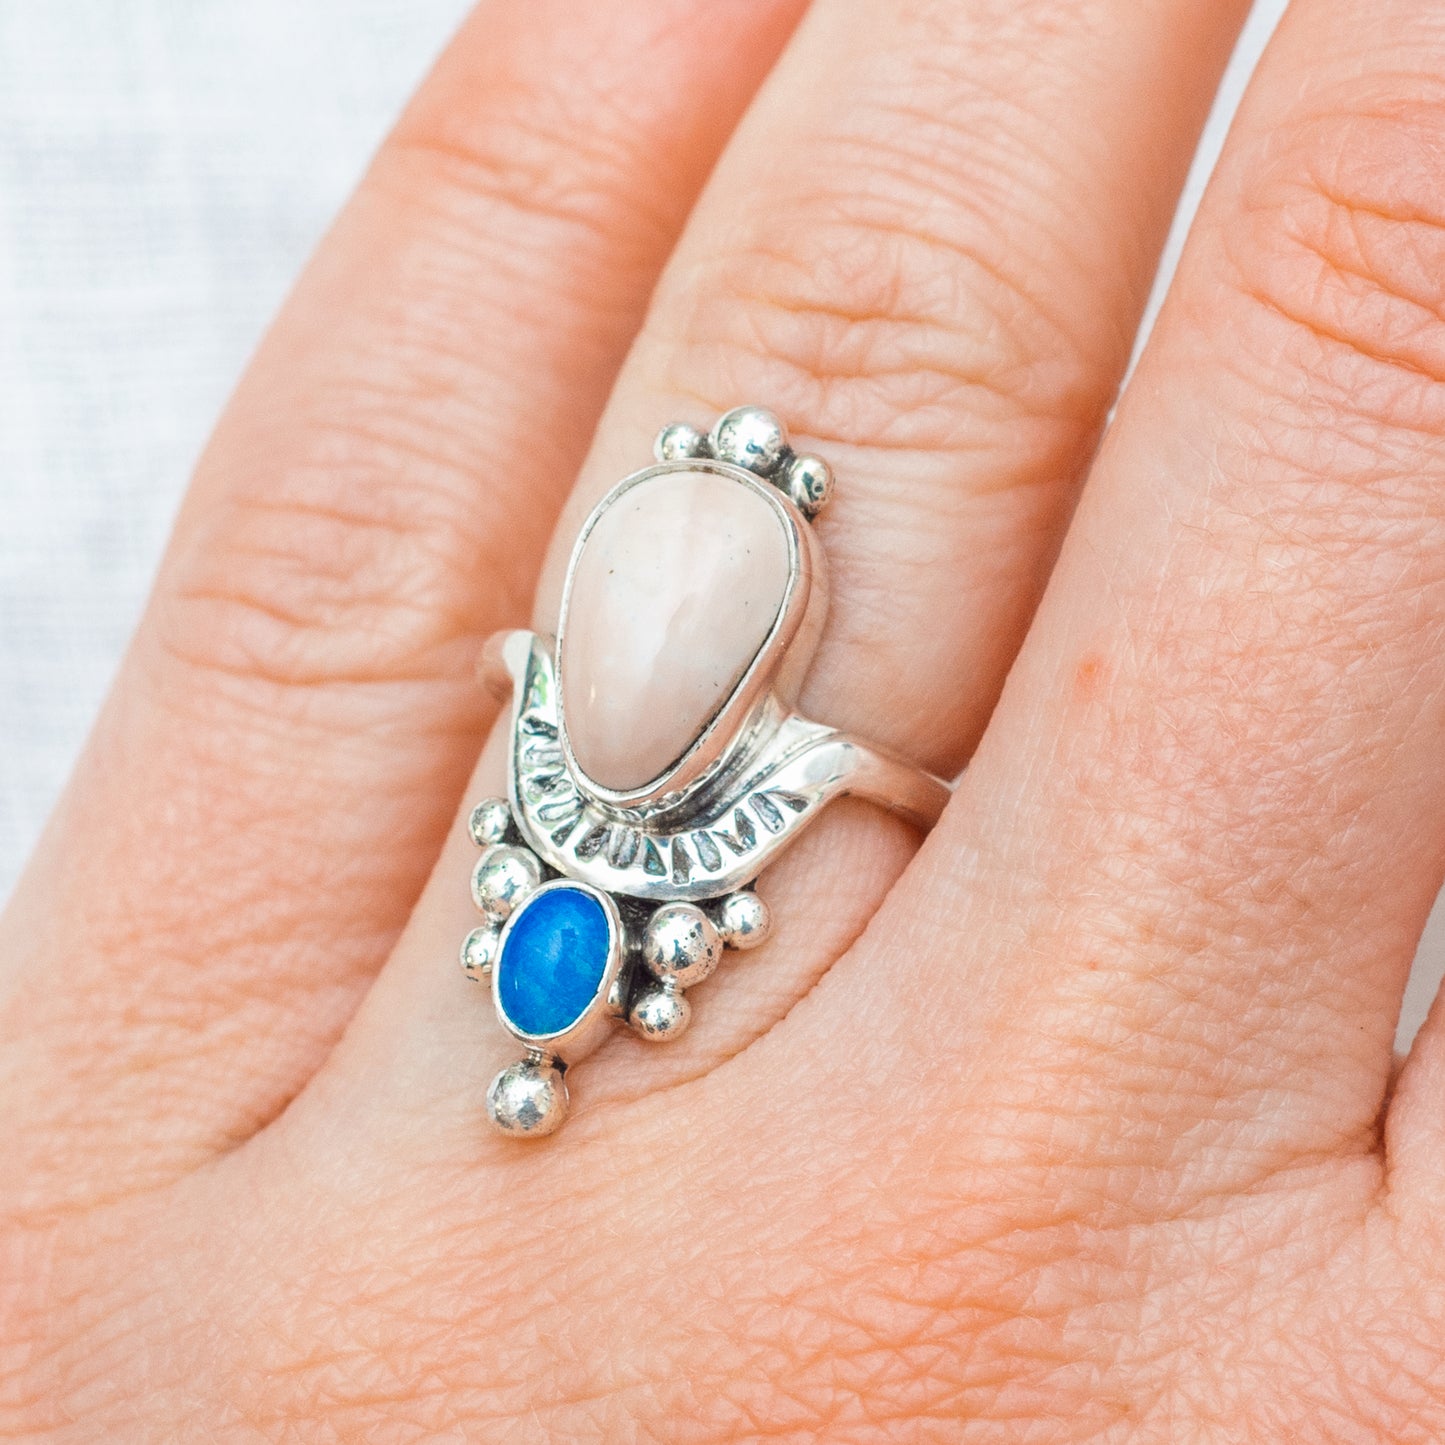 Kindred Embrace Ring ◇ Willow Creek Jasper + Australian Opal ◇ Size 6.5 ◇ Sterling Silver